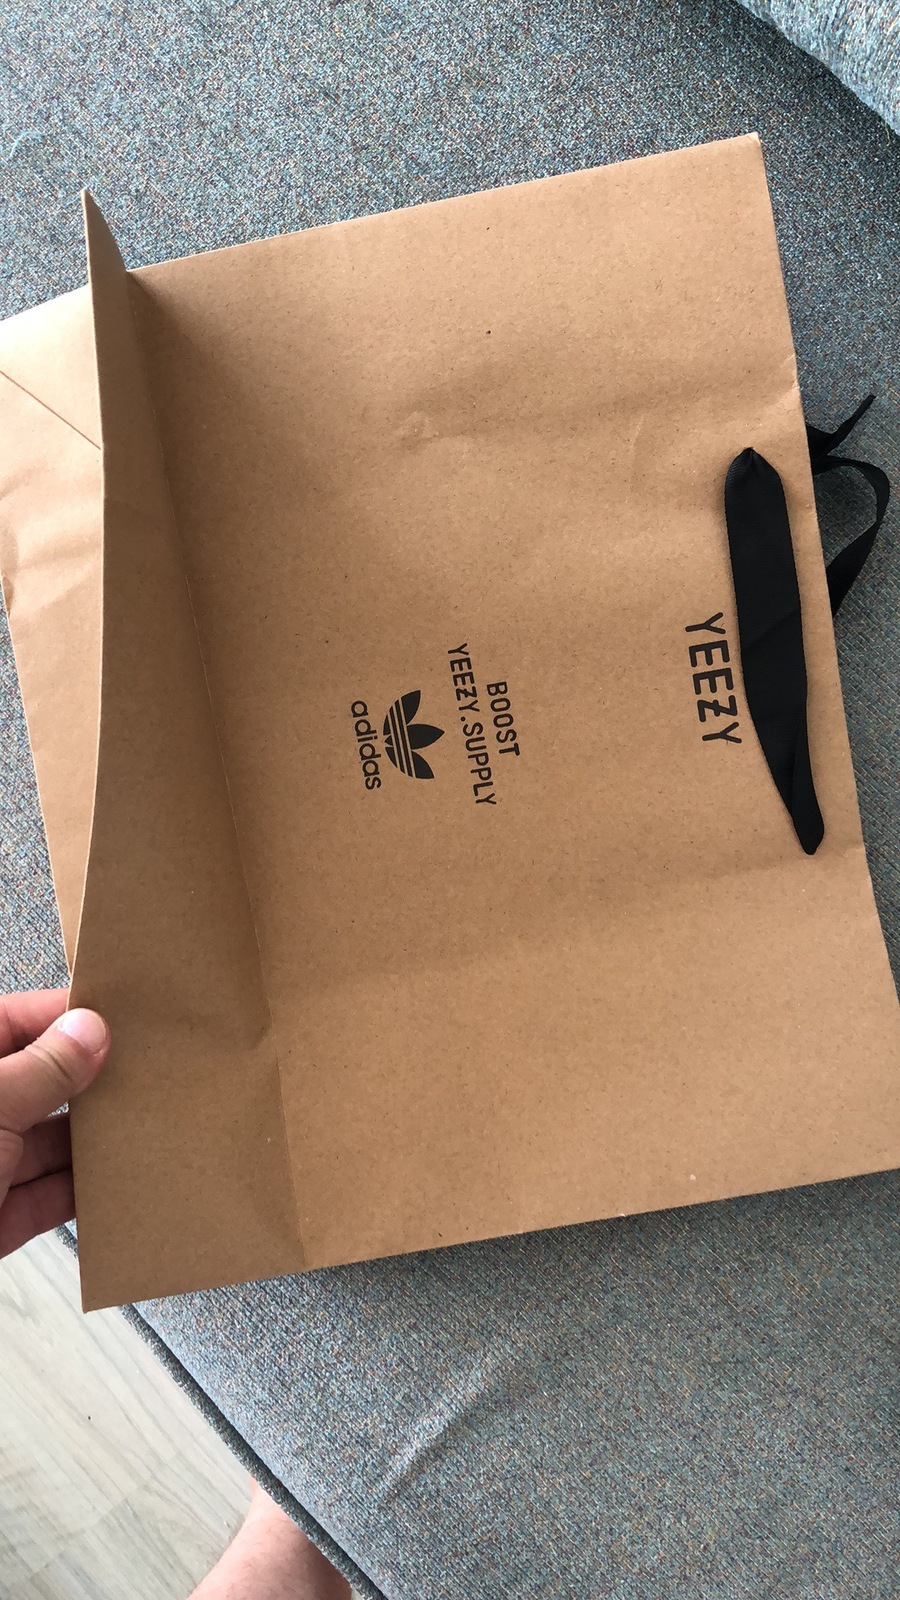 Yeezy Shopping Bag #424453 replica